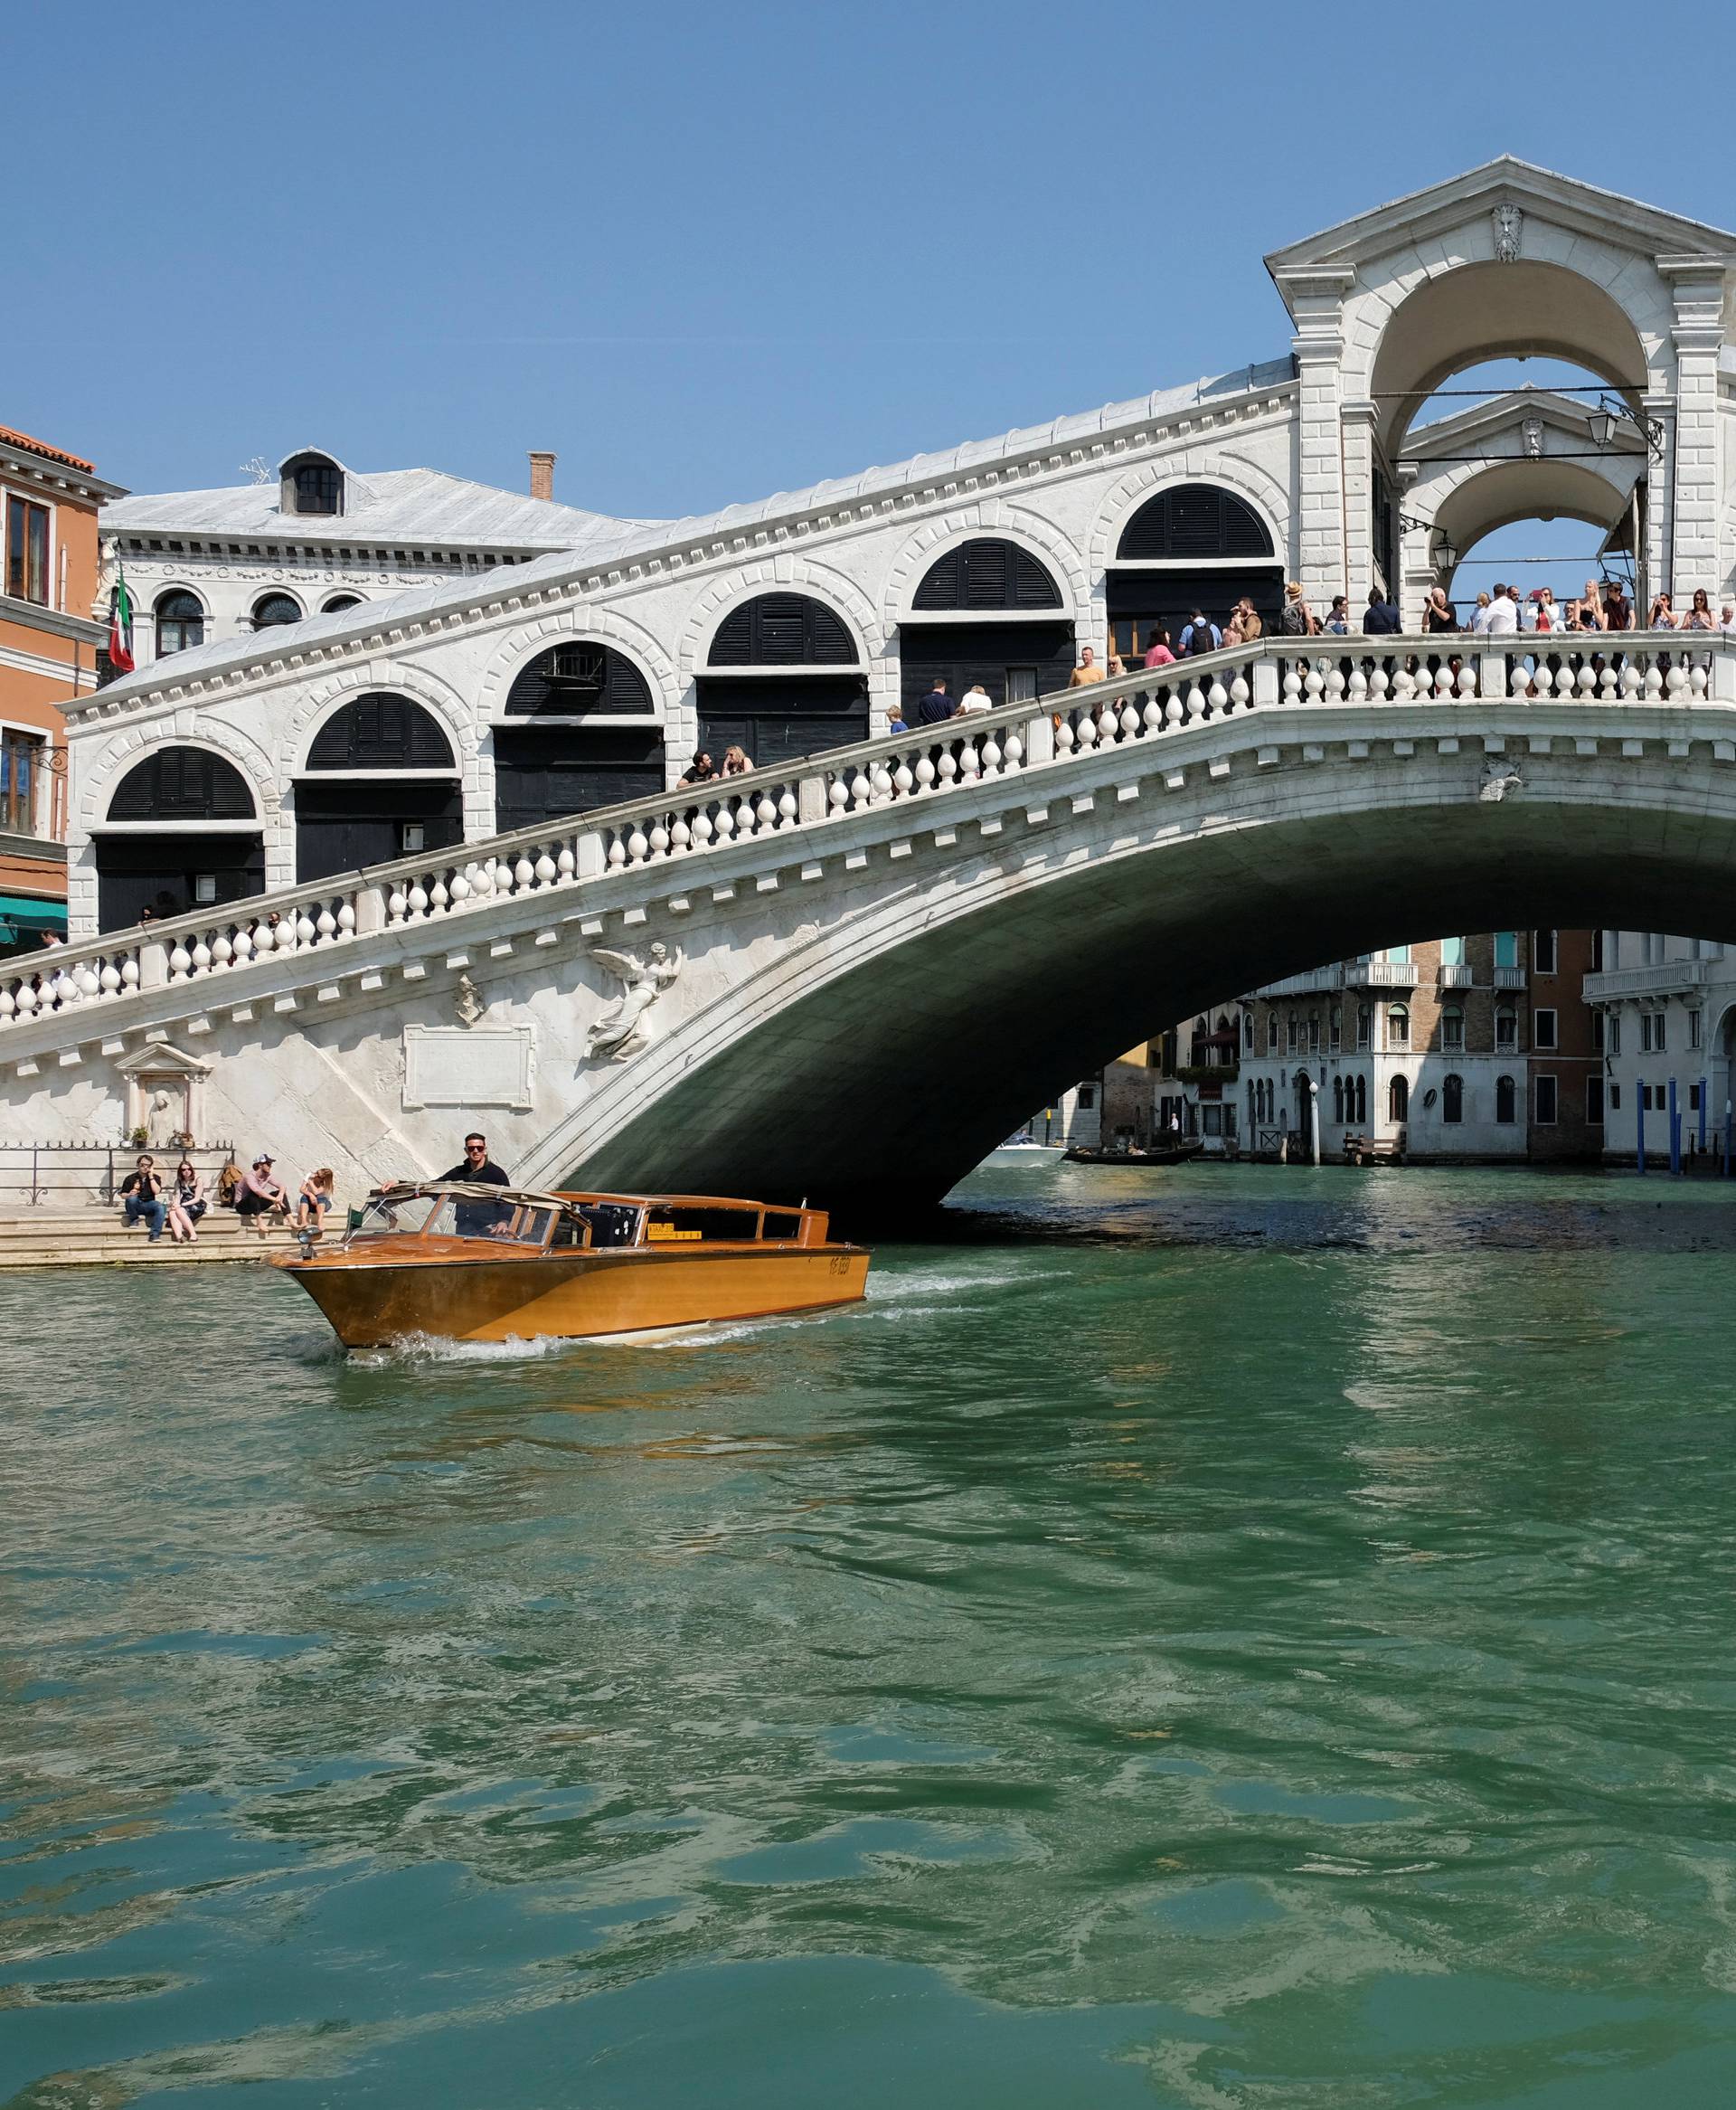 The Rialto Bridge is seen in Venice